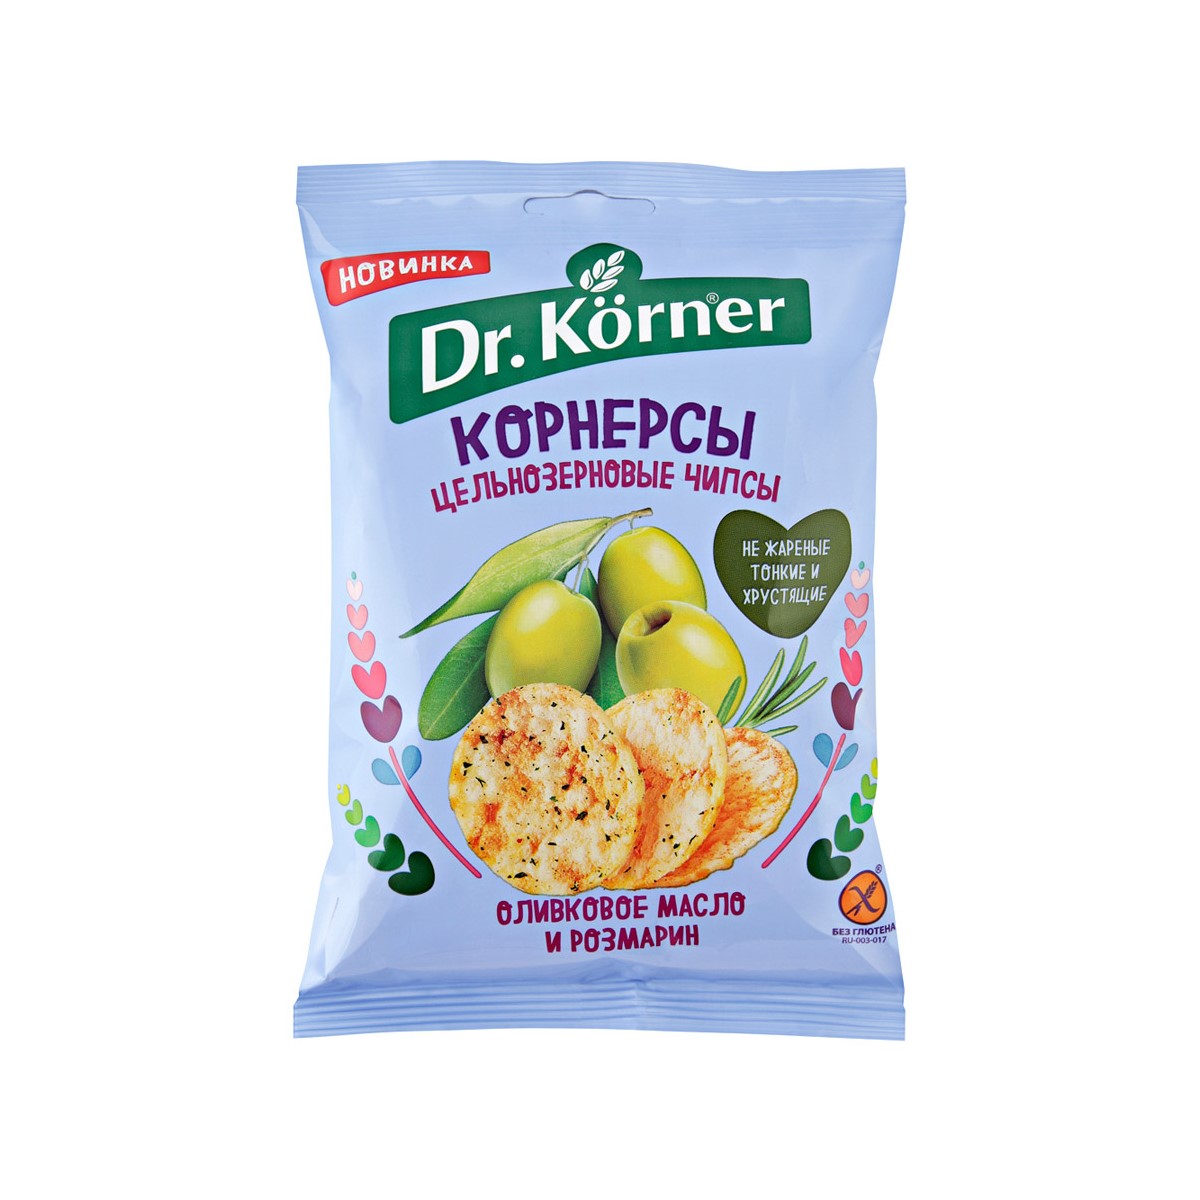 цена Чипсы Dr. Korner цельнозерновые кукурузно-рисовые с оливковым маслом и розмарином 50 г